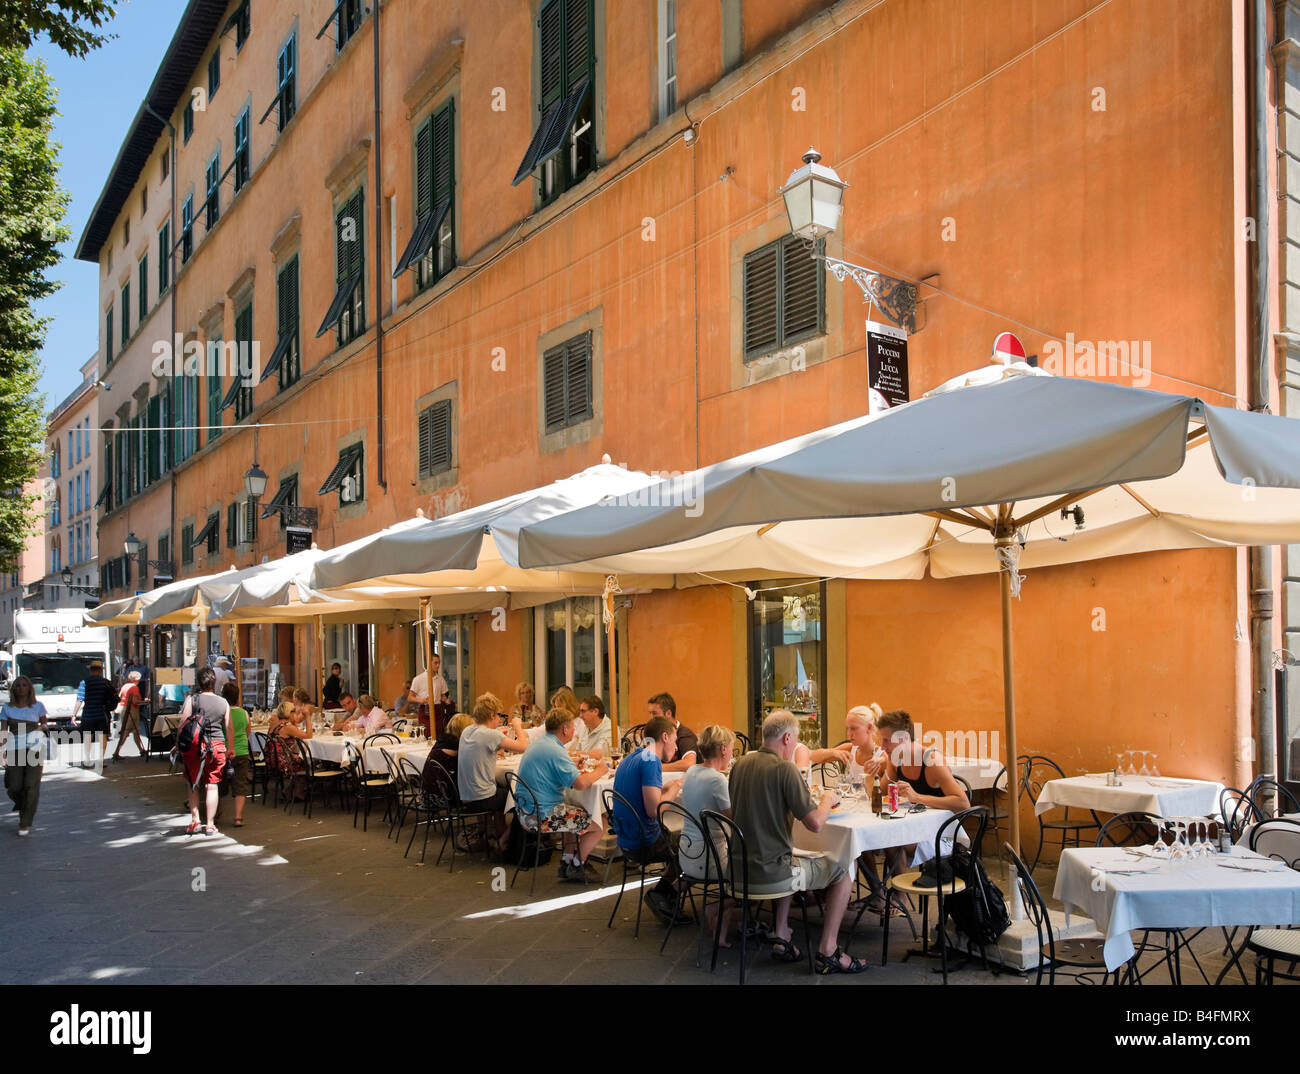 Restaurant, Piazza Napoleone, Lucca, Tuscany, Italy Stock Photo